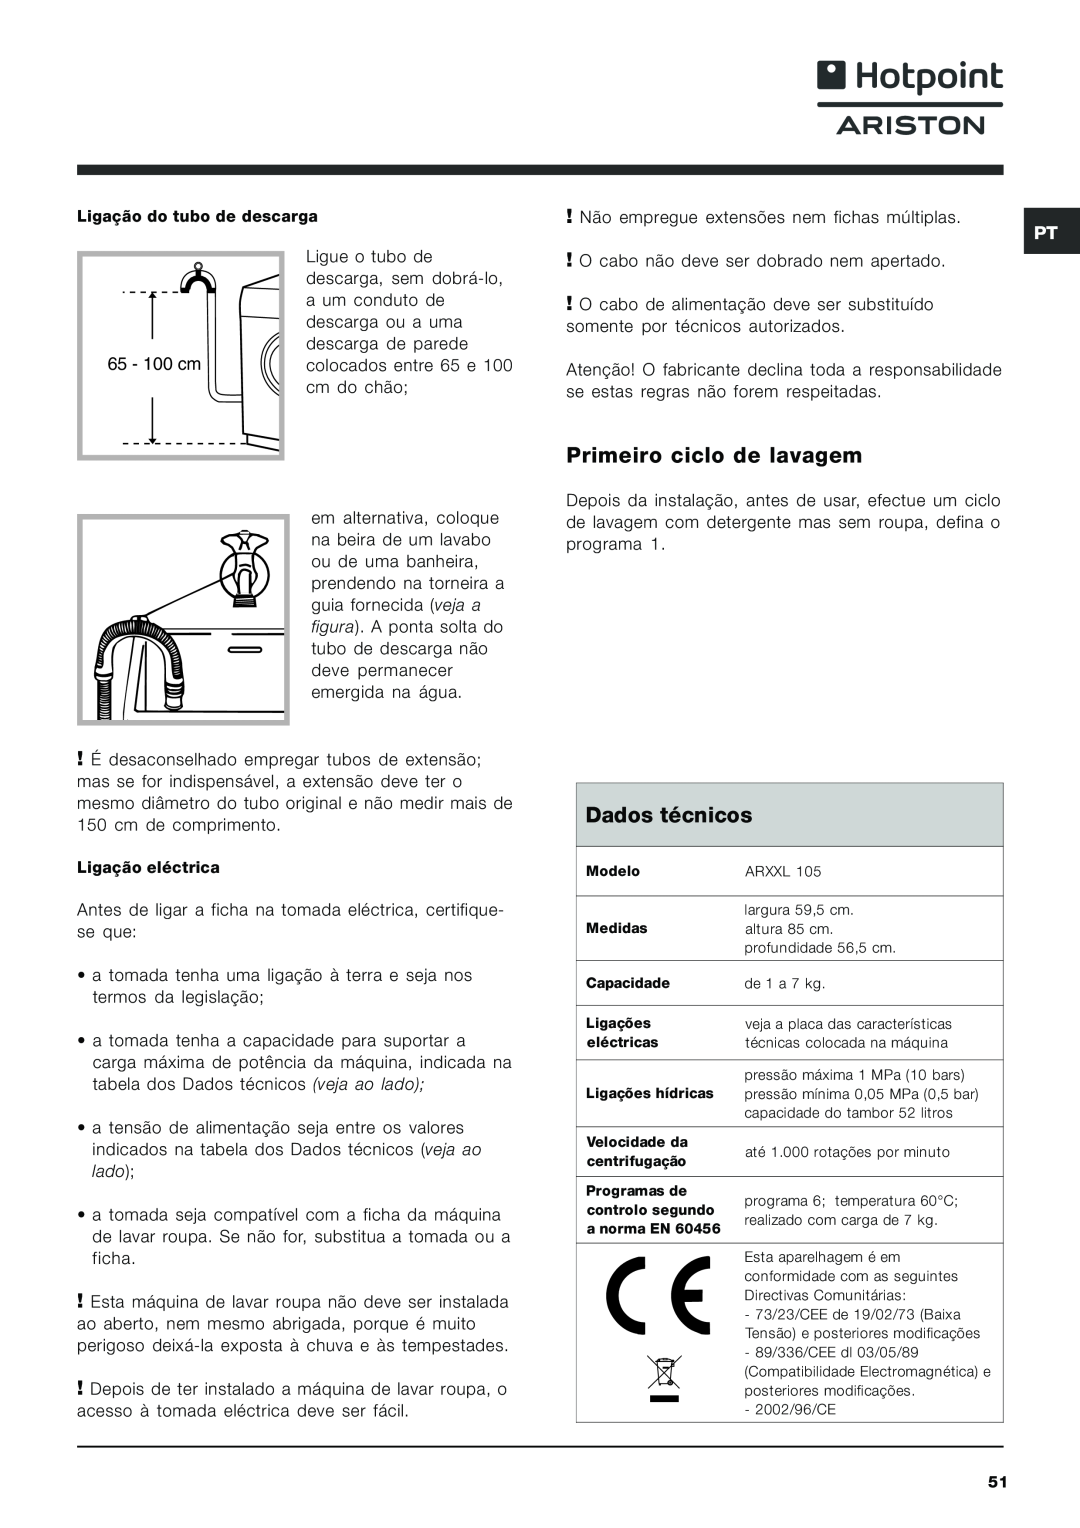 Hotpoint ARXXL105 manual Primeiro ciclo de lavagem, Dados técnicos 